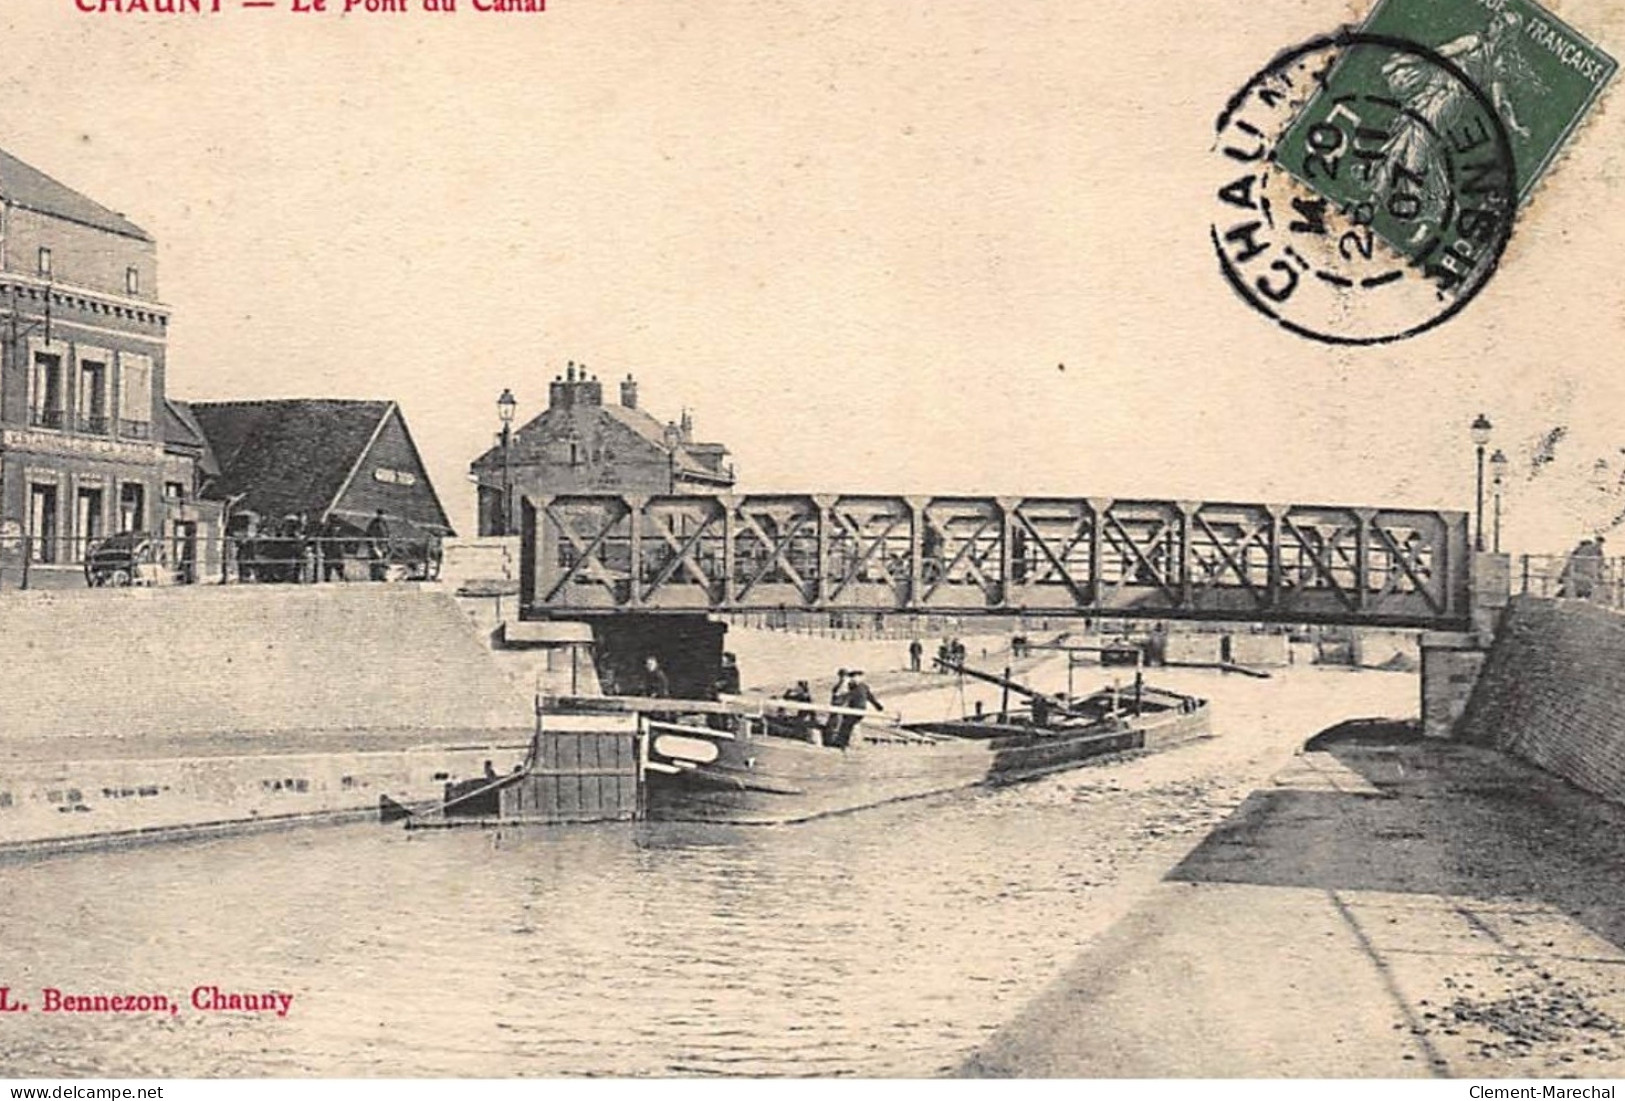 CHAUNY : Le Pont Du Canal - Tres Bon Etat - Chauny